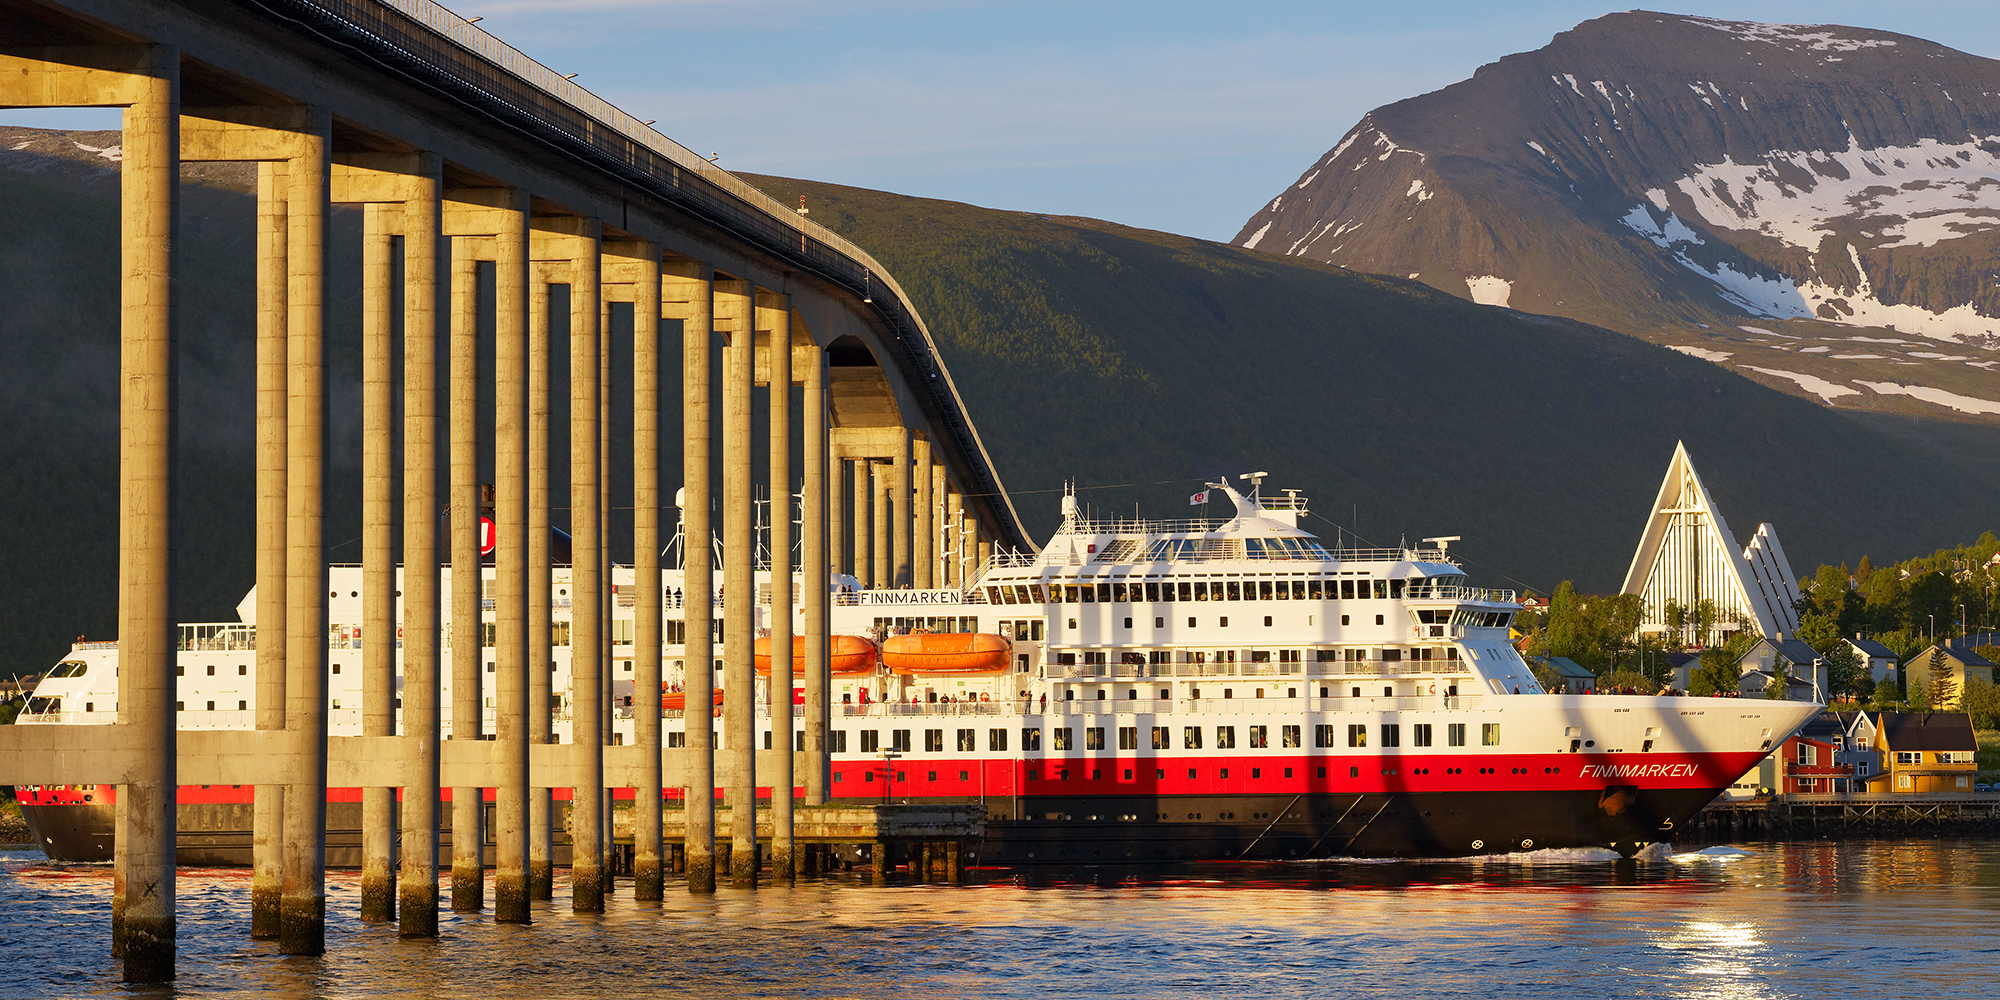 Moverse En Barco La Gu A Oficial De Viaje A Noruega Visitnorway Es